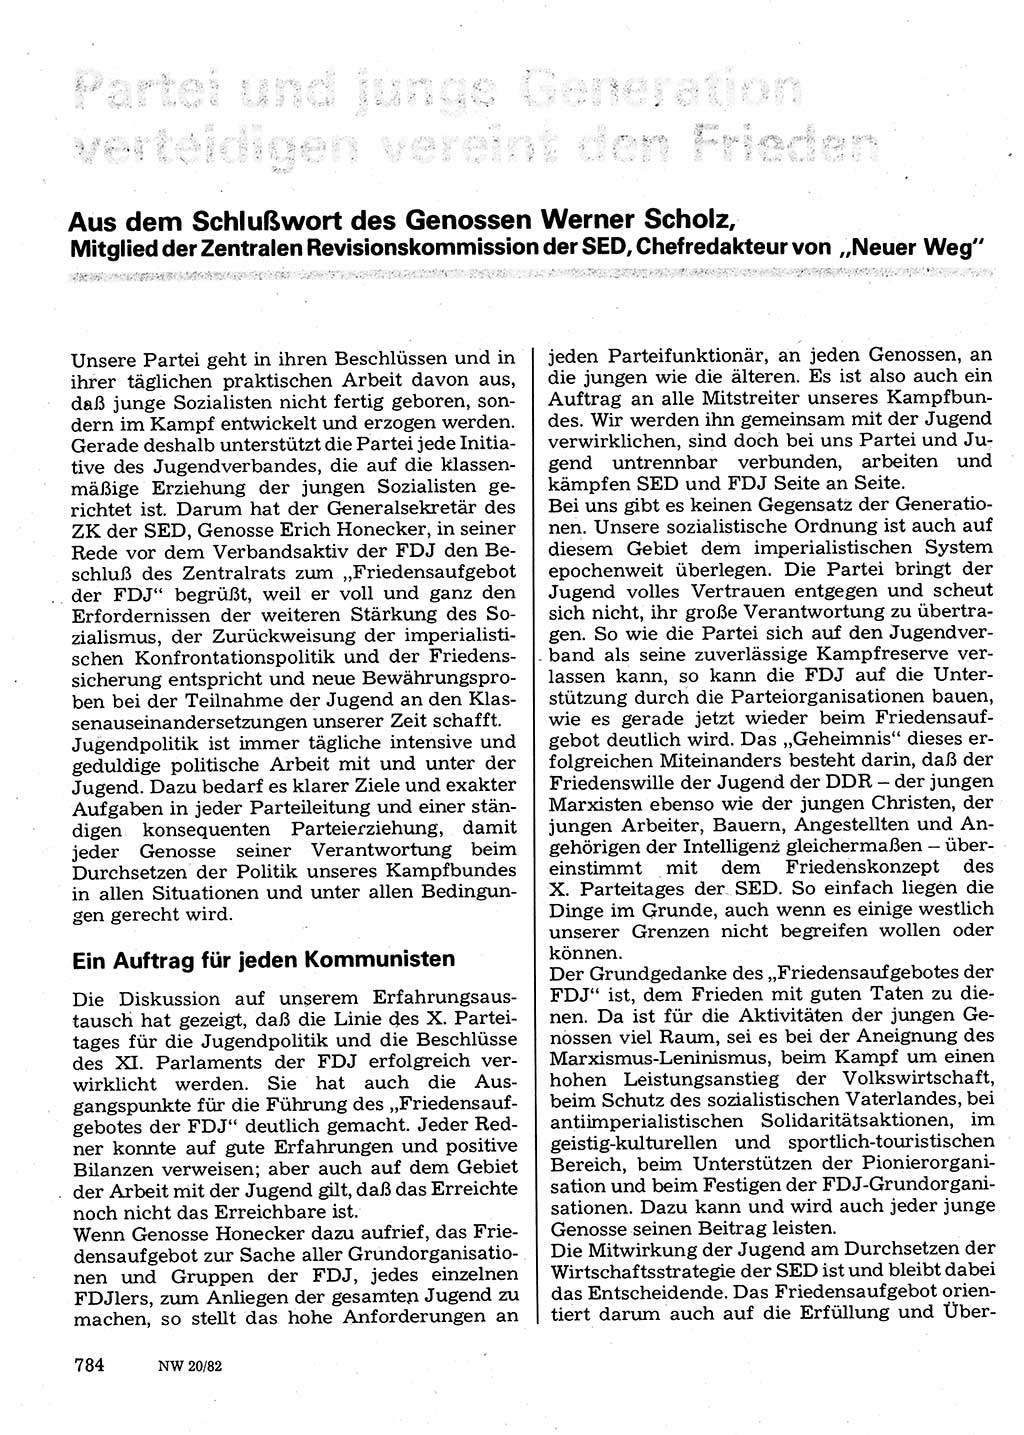 Neuer Weg (NW), Organ des Zentralkomitees (ZK) der SED (Sozialistische Einheitspartei Deutschlands) für Fragen des Parteilebens, 37. Jahrgang [Deutsche Demokratische Republik (DDR)] 1982, Seite 784 (NW ZK SED DDR 1982, S. 784)